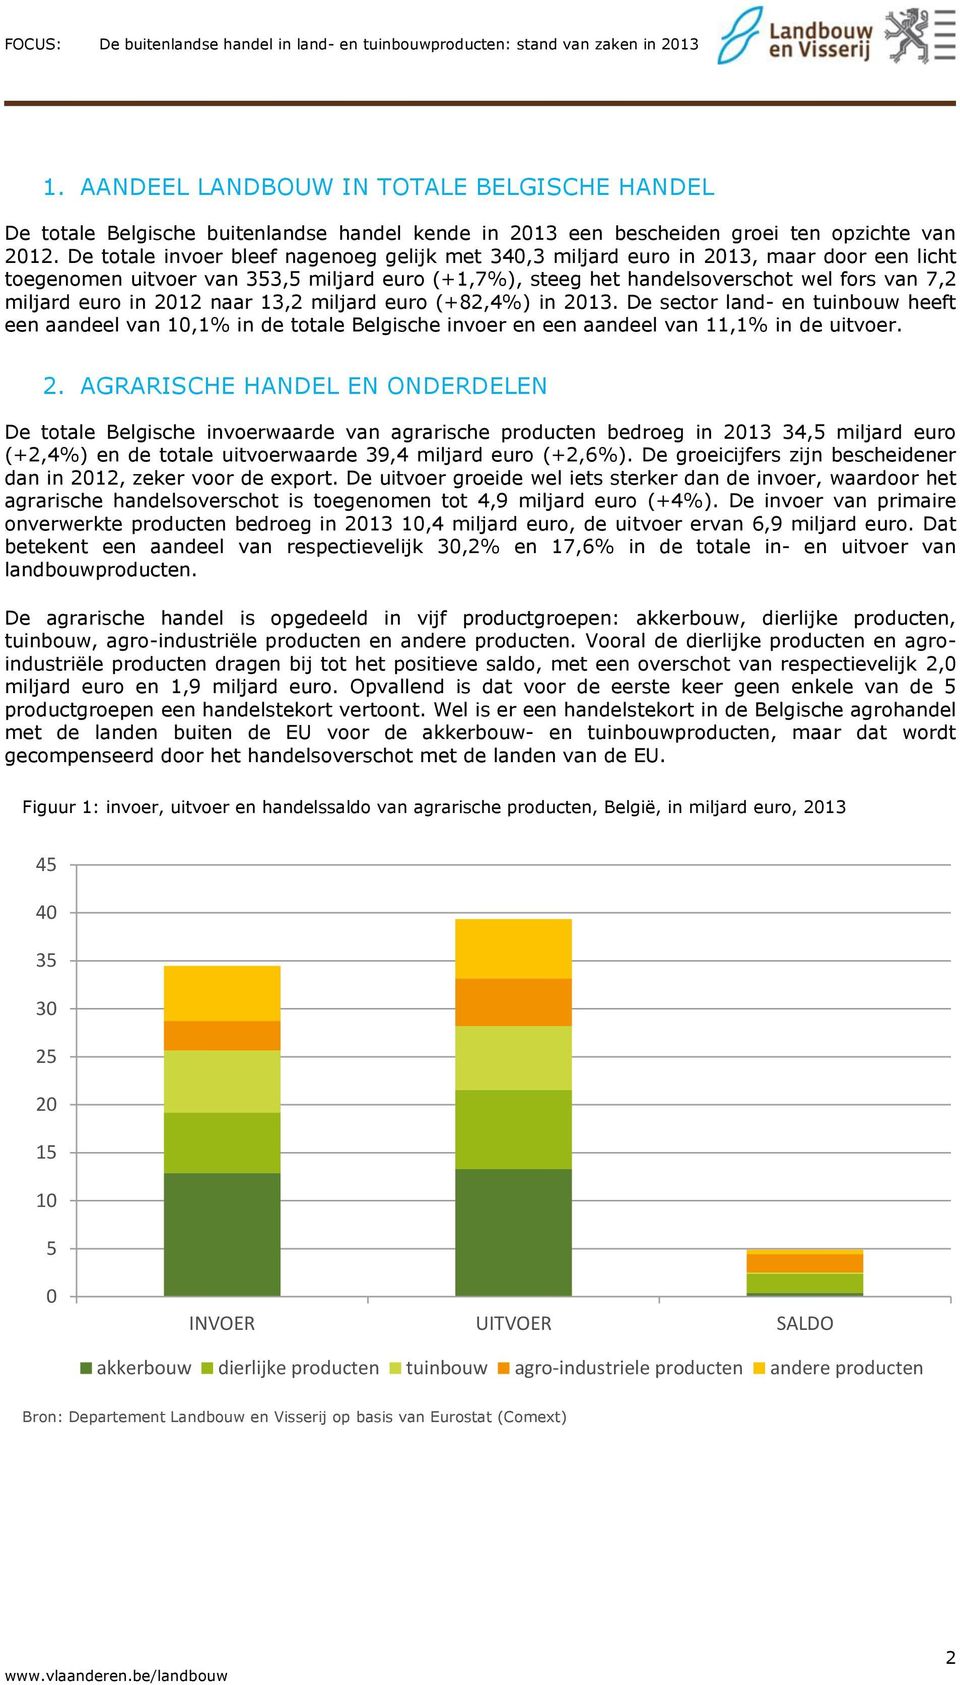 in 2012 naar 13,2 miljard euro (+82,4%) in 2013. De sector land- en tuinbouw heeft een aandeel van 10,1% in de totale Belgische invoer en een aandeel van 11,1% in de uitvoer. 2. AGRARISCHE HANDEL EN ONDERDELEN De totale Belgische invoerwaarde van agrarische producten bedroeg in 2013 34,5 miljard euro (+2,4%) en de totale uitvoerwaarde 39,4 miljard euro (+2,6%).